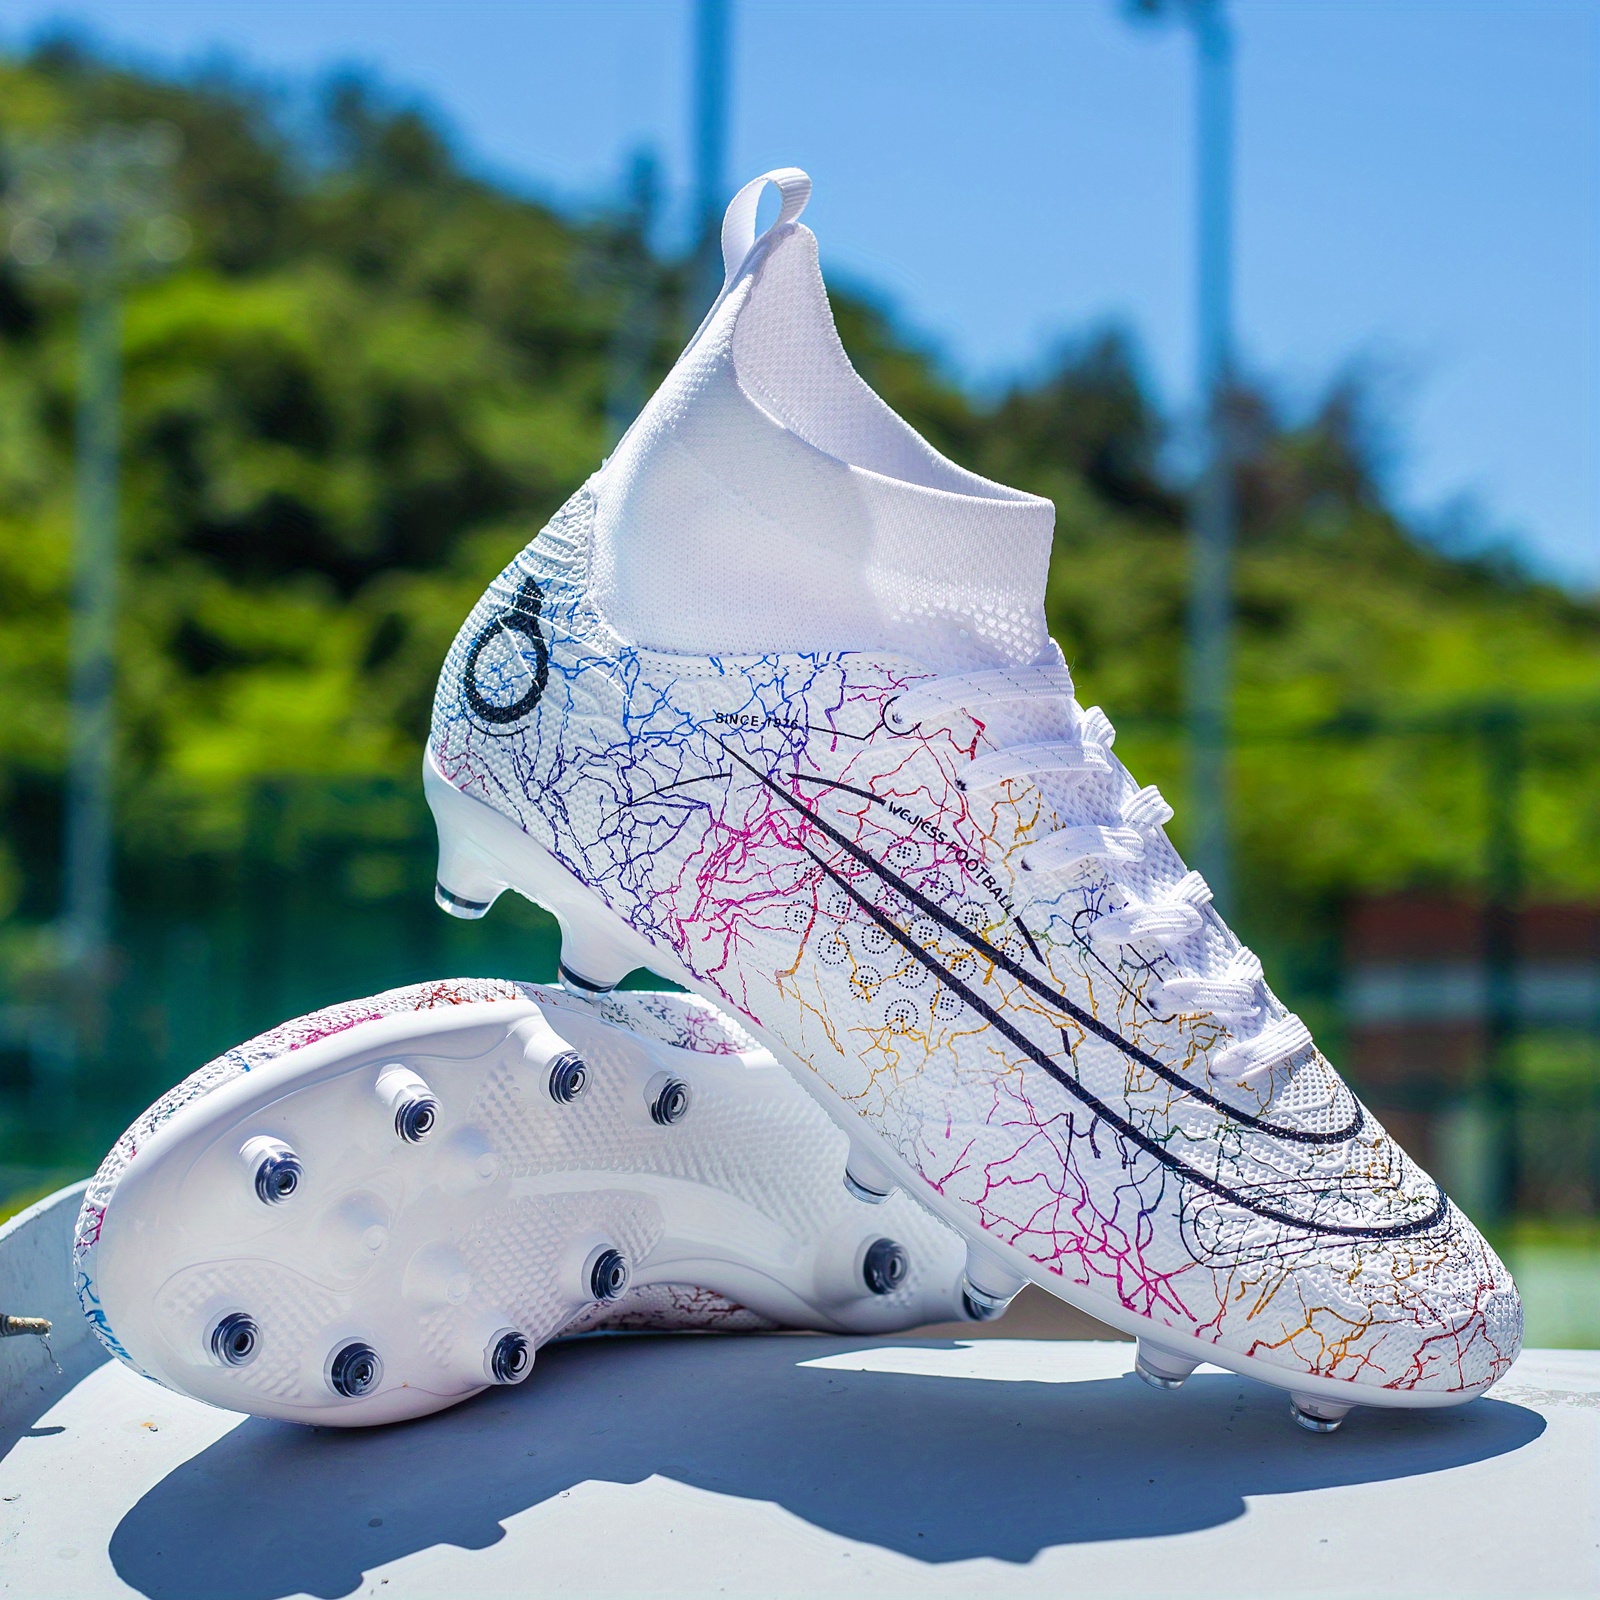 2019 Steel Spike Custom Soccer Shoes Football Boots for Men Soccer